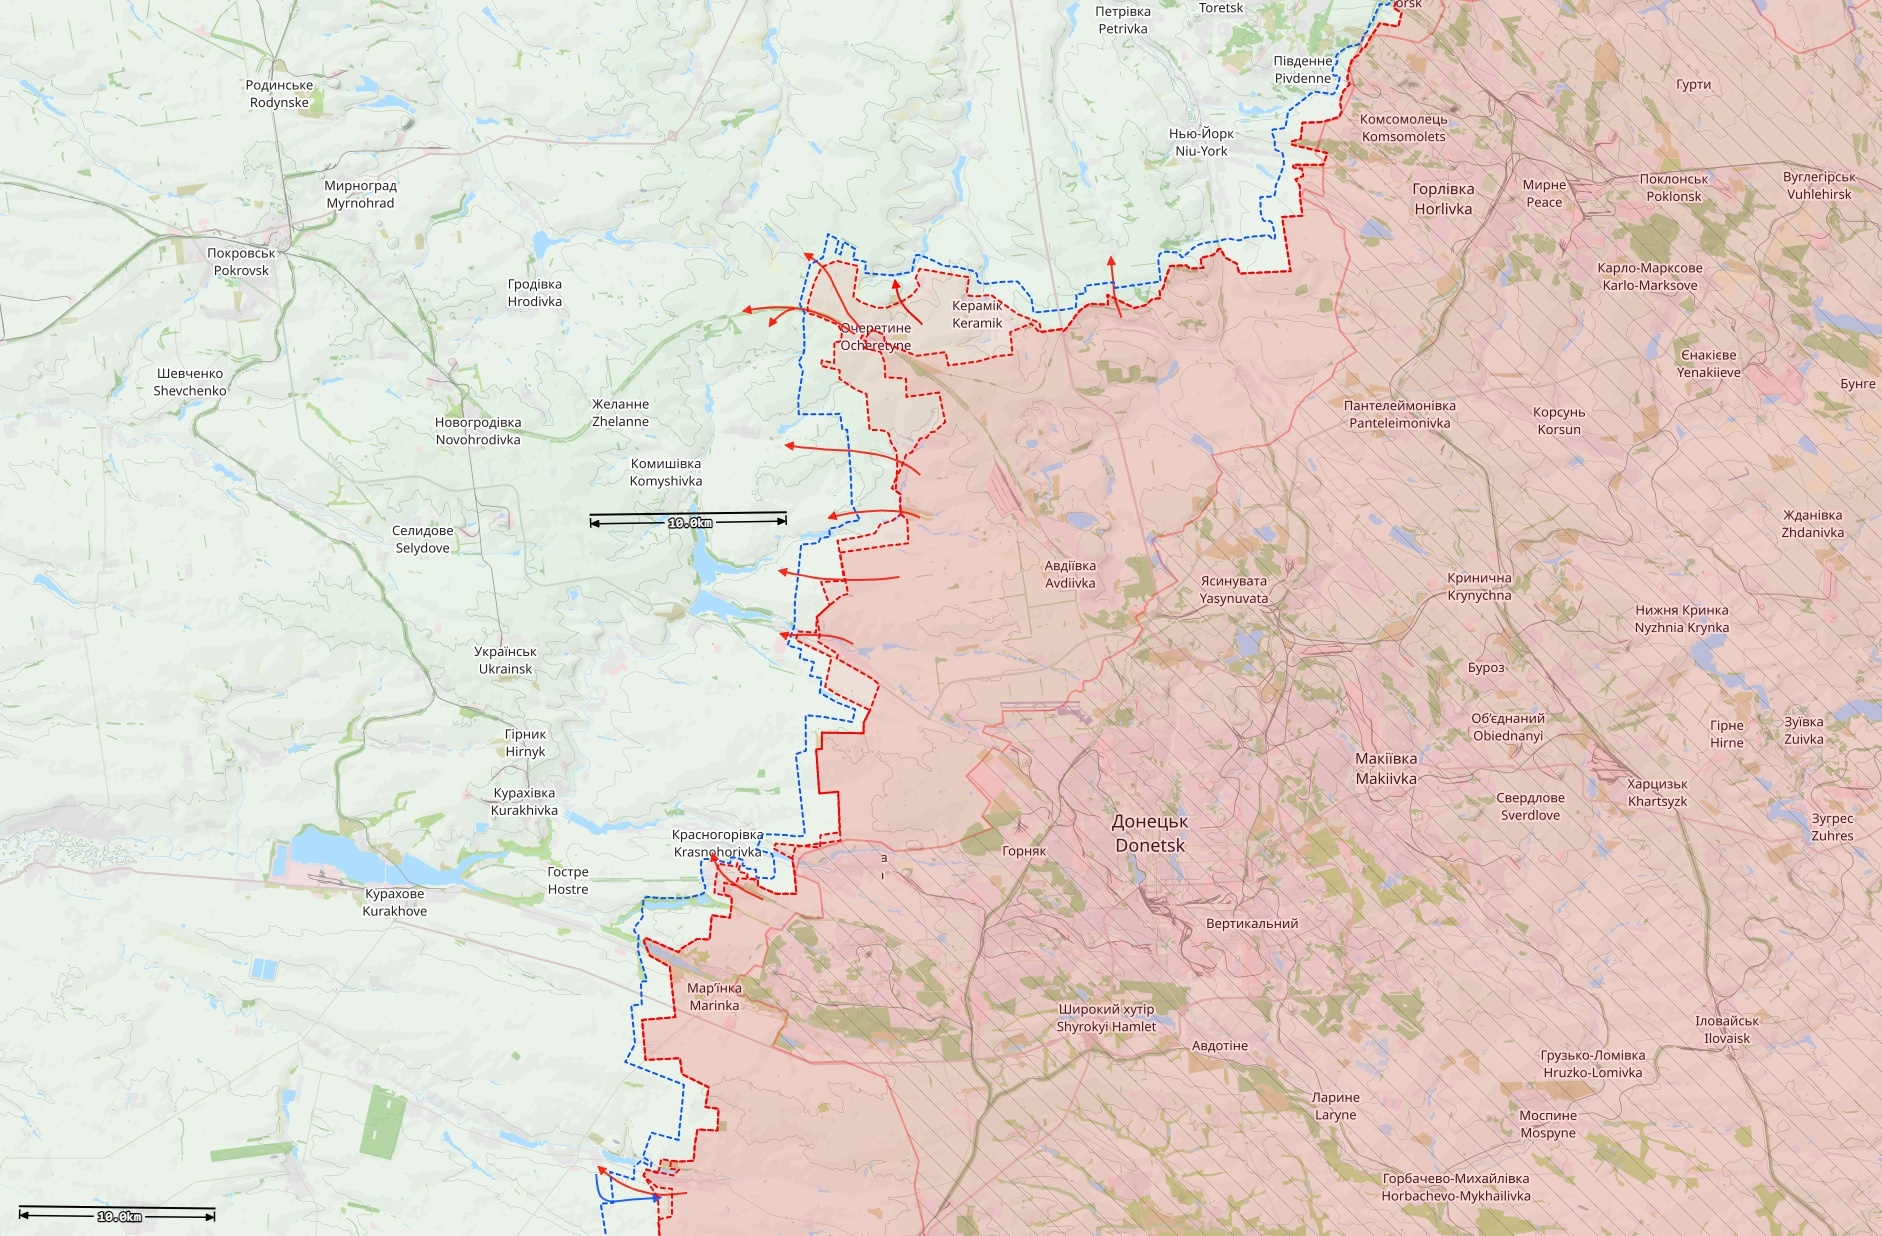 Ote Itä-Ukrainan rintamatilanteesta. Punaiset nuolet ovat Venäjän hyökkäyksiä. Vaaleamman punaisella on merkattu alue, jonka Venäjä on vallannut noin viimeisen kahden viikon aikana. Kartta: The War in Ukraine / Black Bird Group.